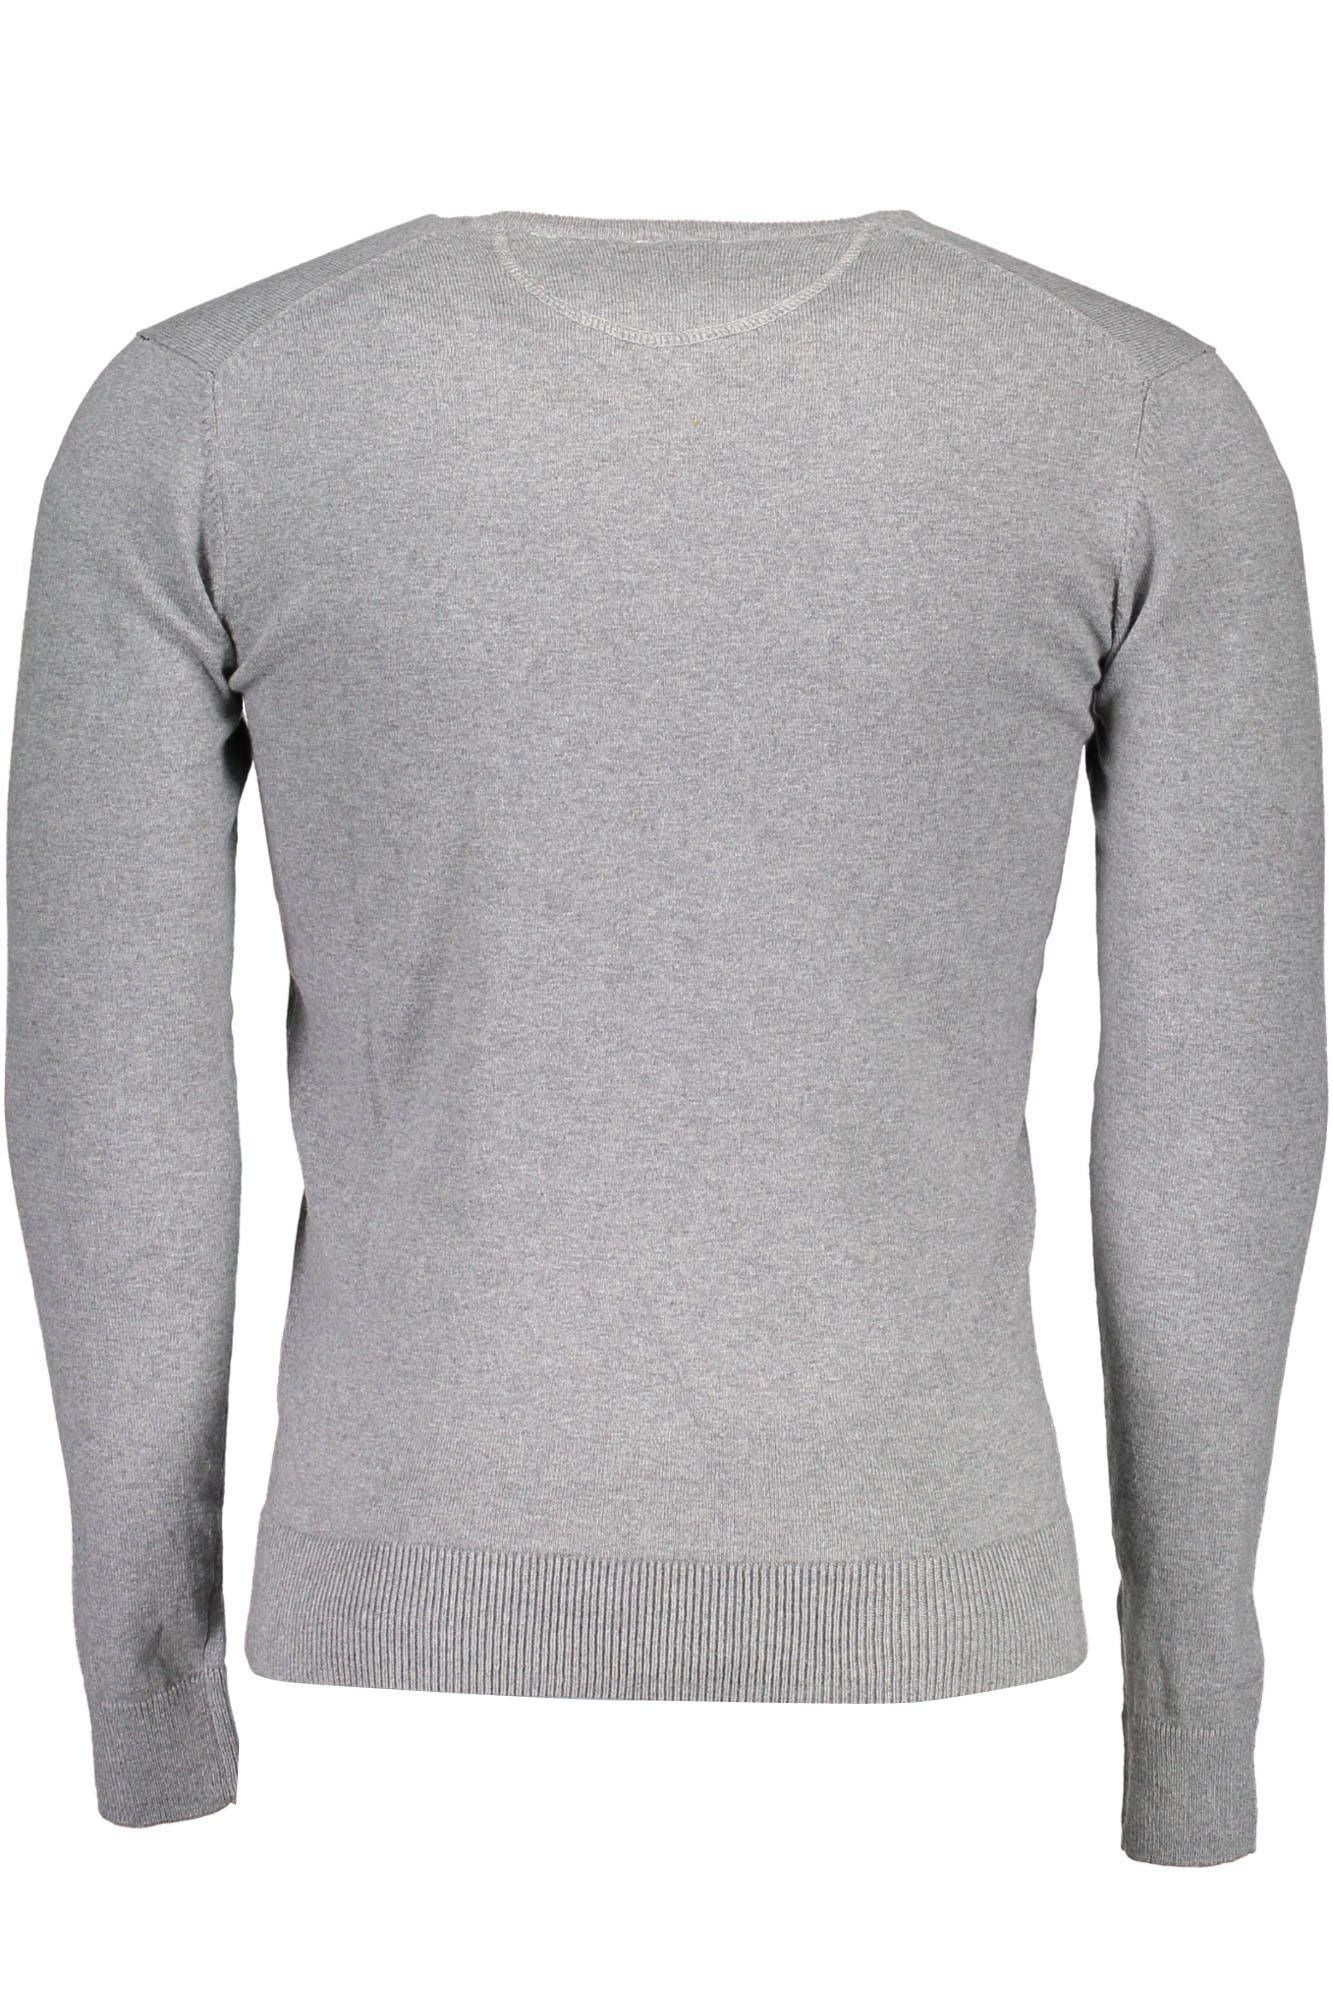 U.S. POLO ASSN. Gray Sweater - Fizigo